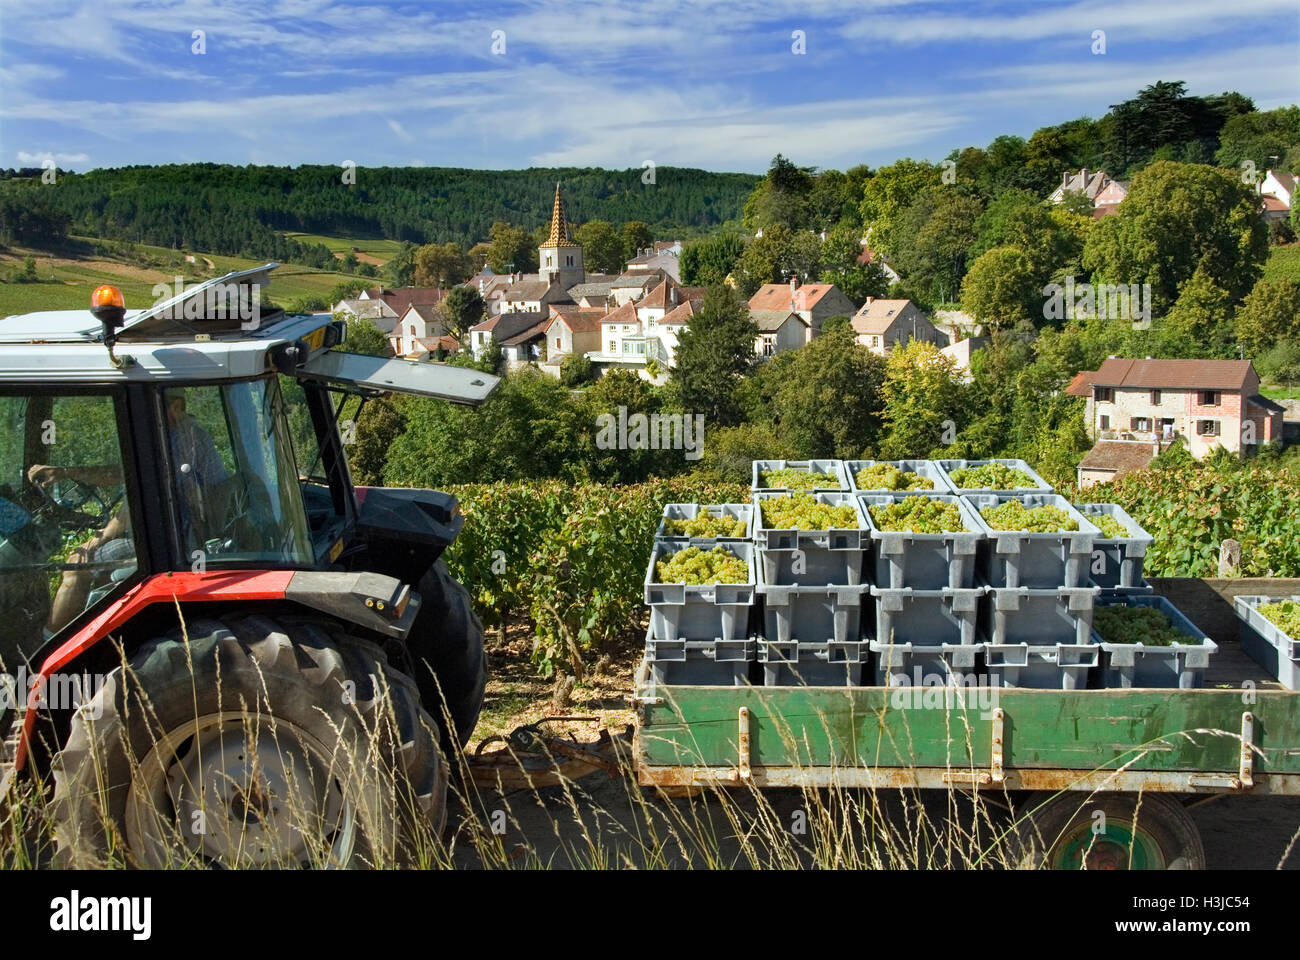 Bourgogne récolte village tracteur remorque Chardonnay raisins du domaine Bonneau du Martray en conteneurs Pernand-Vergelesses, Côte d'Or, France Banque D'Images